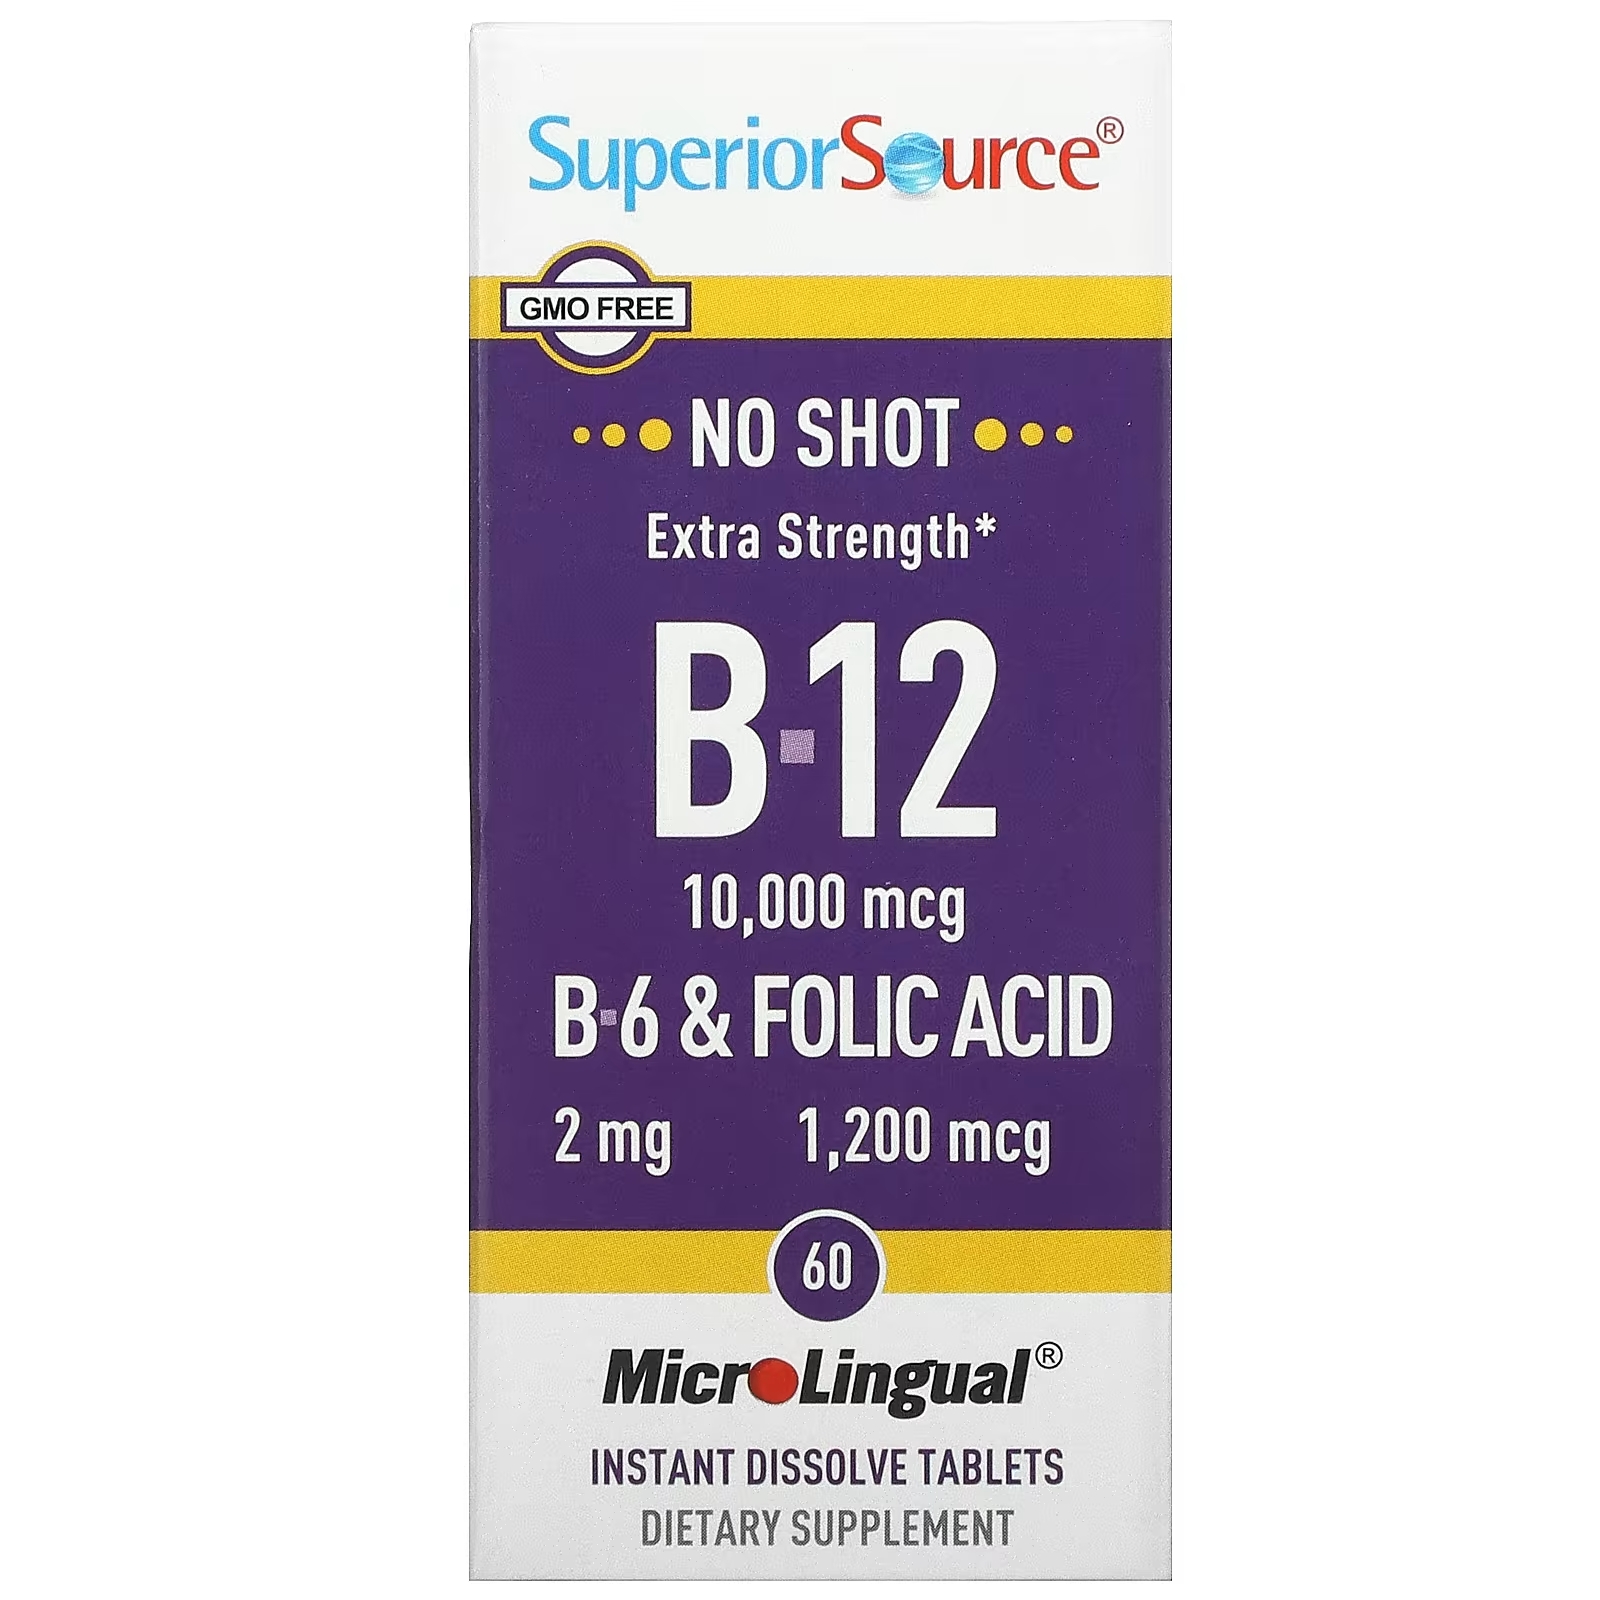 Superior Source витамин B12,витамин B6 и фолиевая кислота с повышенной силой действия, 60 быстрорастворимых таблеток galena gastrob12 витамин b12 b6 фолиевая кислота 60 капсул